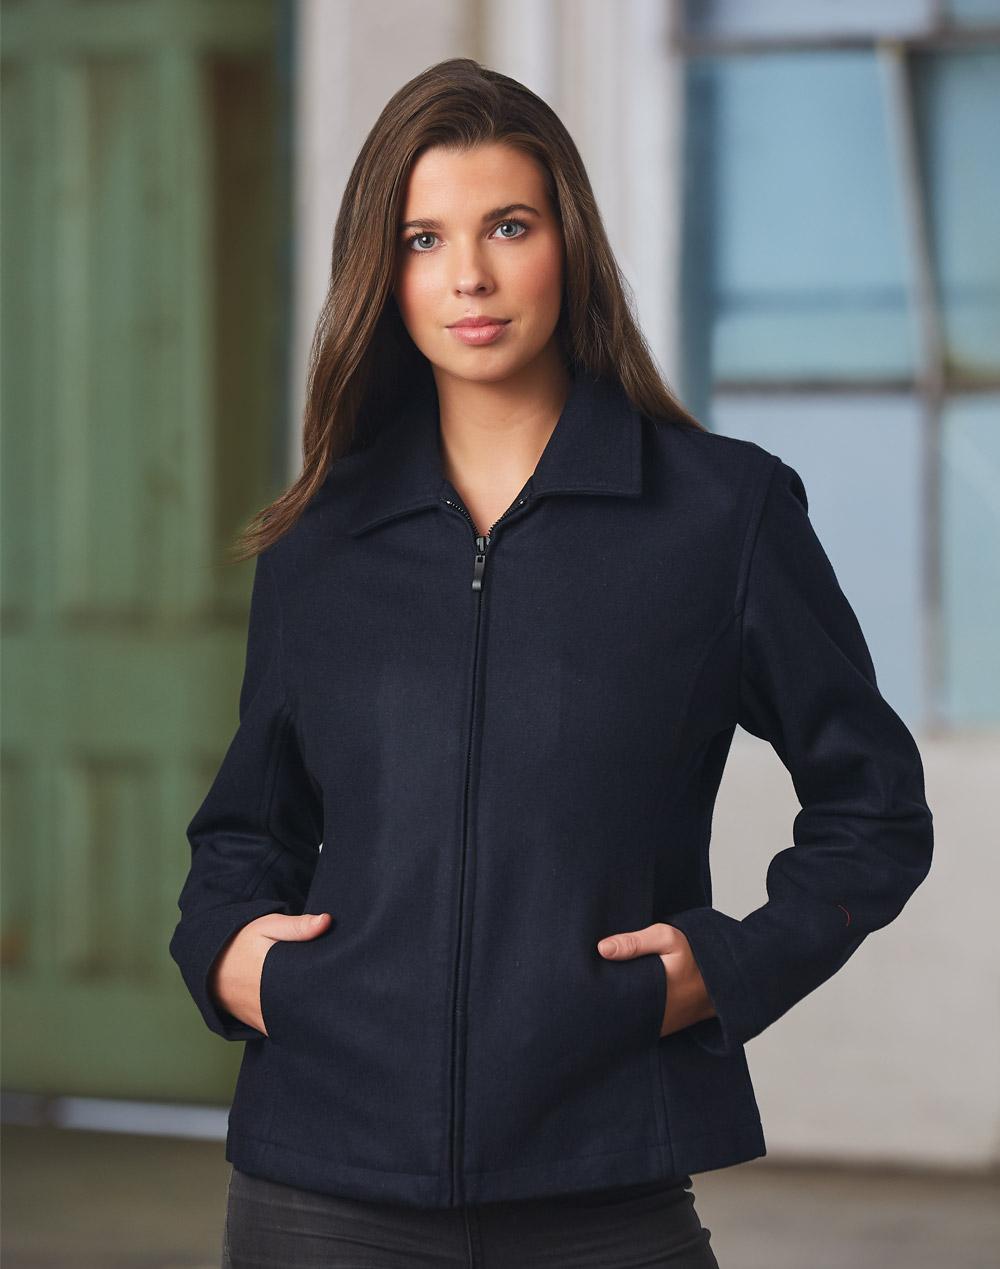 JK14 Ladies Flinders Wool Blend Corporate Jacket